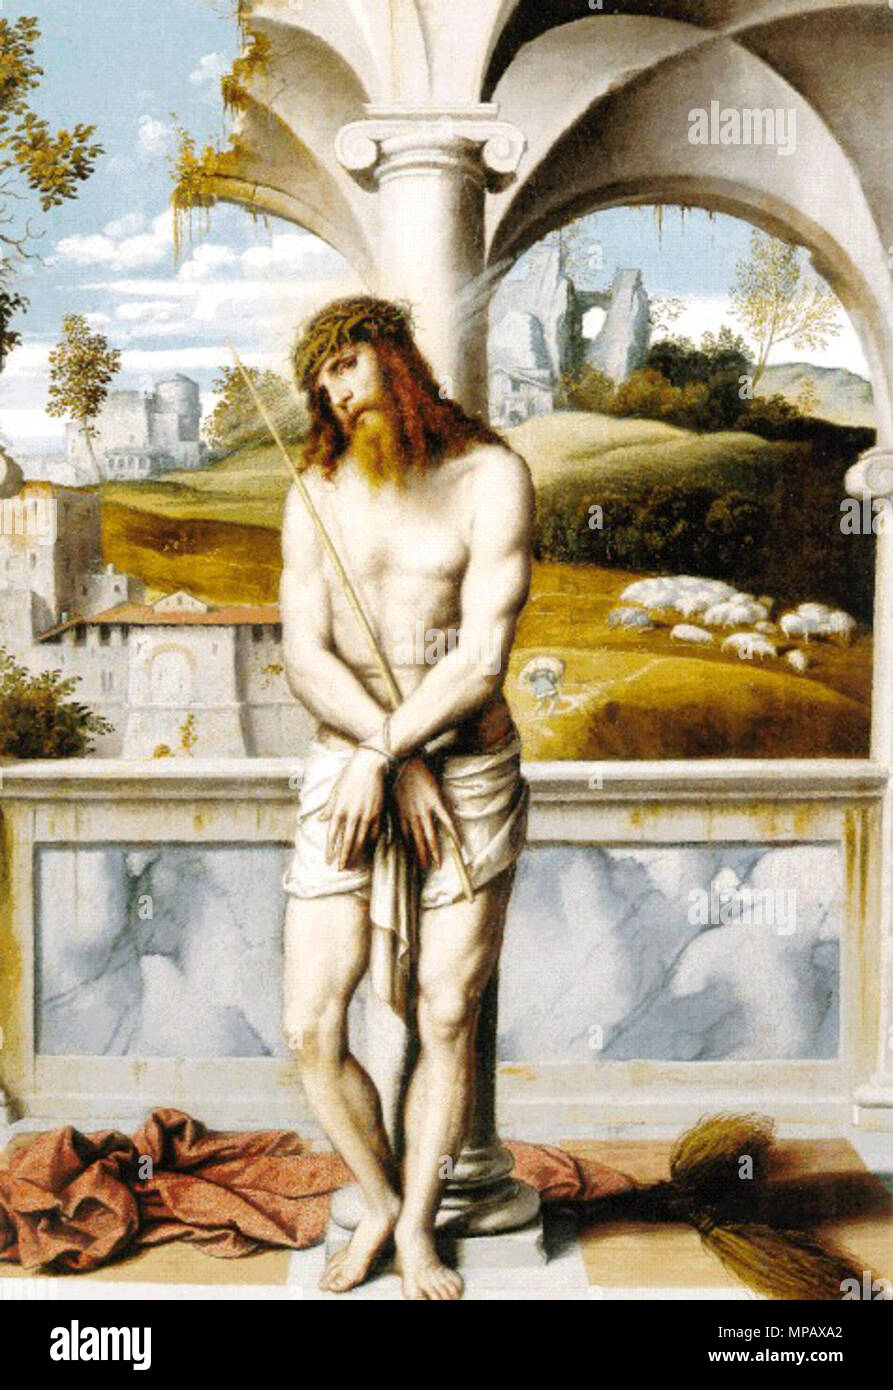 Italiano: Il Cristo alla colonna del Moretto è un quadro (olio su tavola,  cm 59 x 42,5) che si trova a Napoli nel Museo di Capodimonte (inv. Q 97),  facente parte